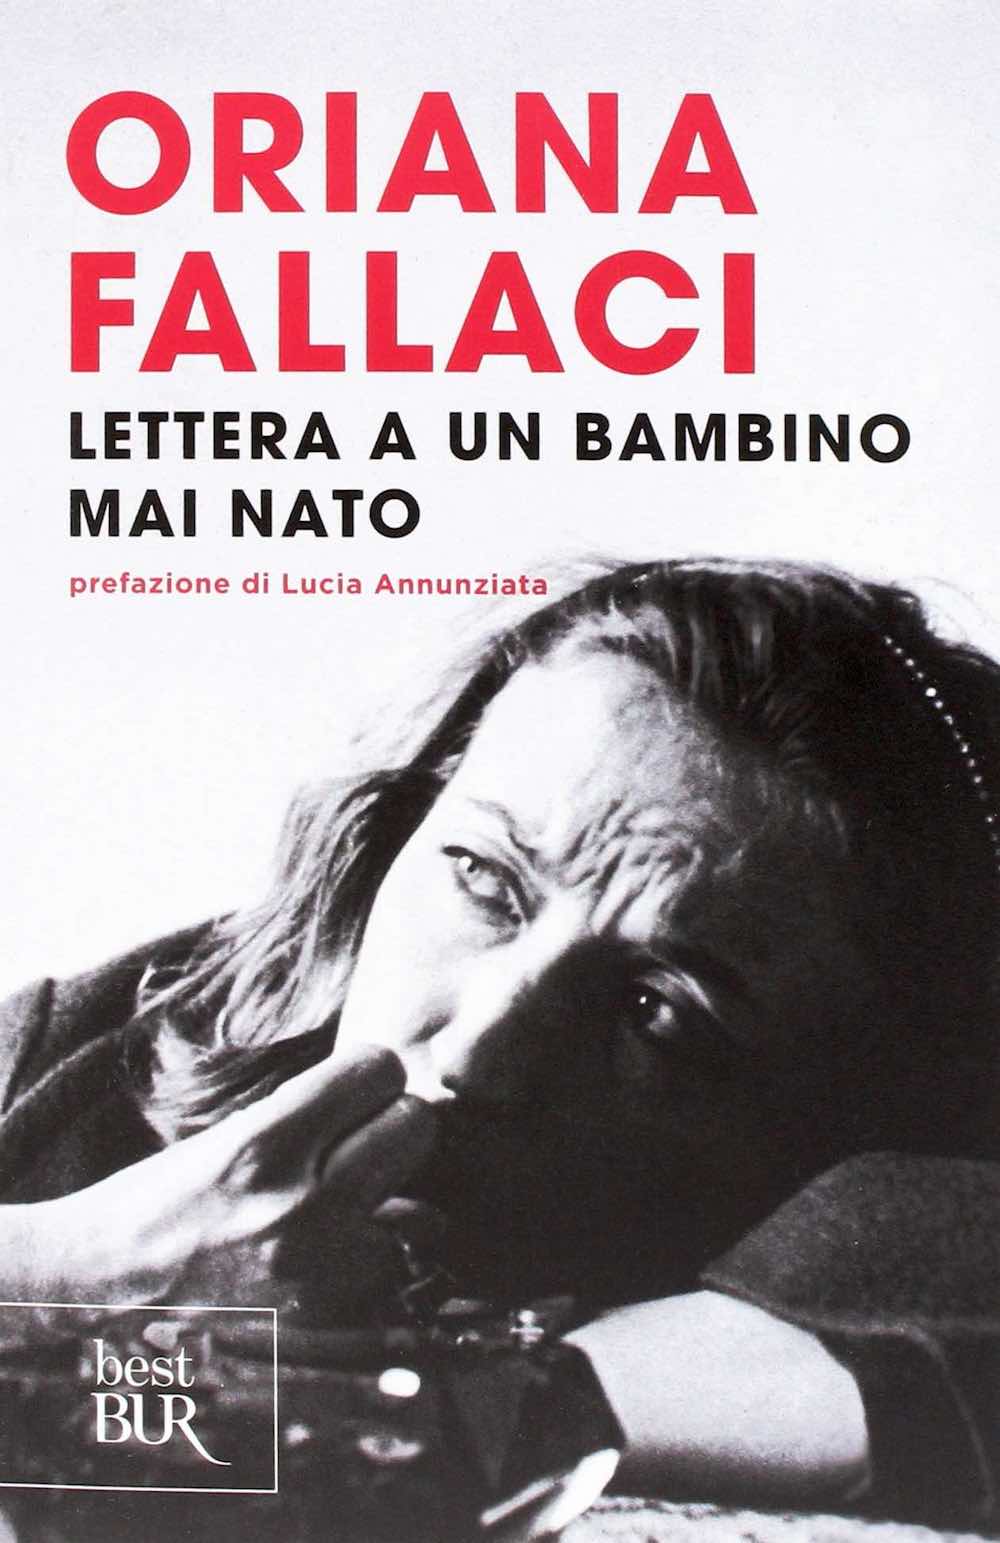 Copertina di Lettera a un bambino ma nato di Oriana Fallaci, edito da Bur con prefazione di Lucia Annunziata